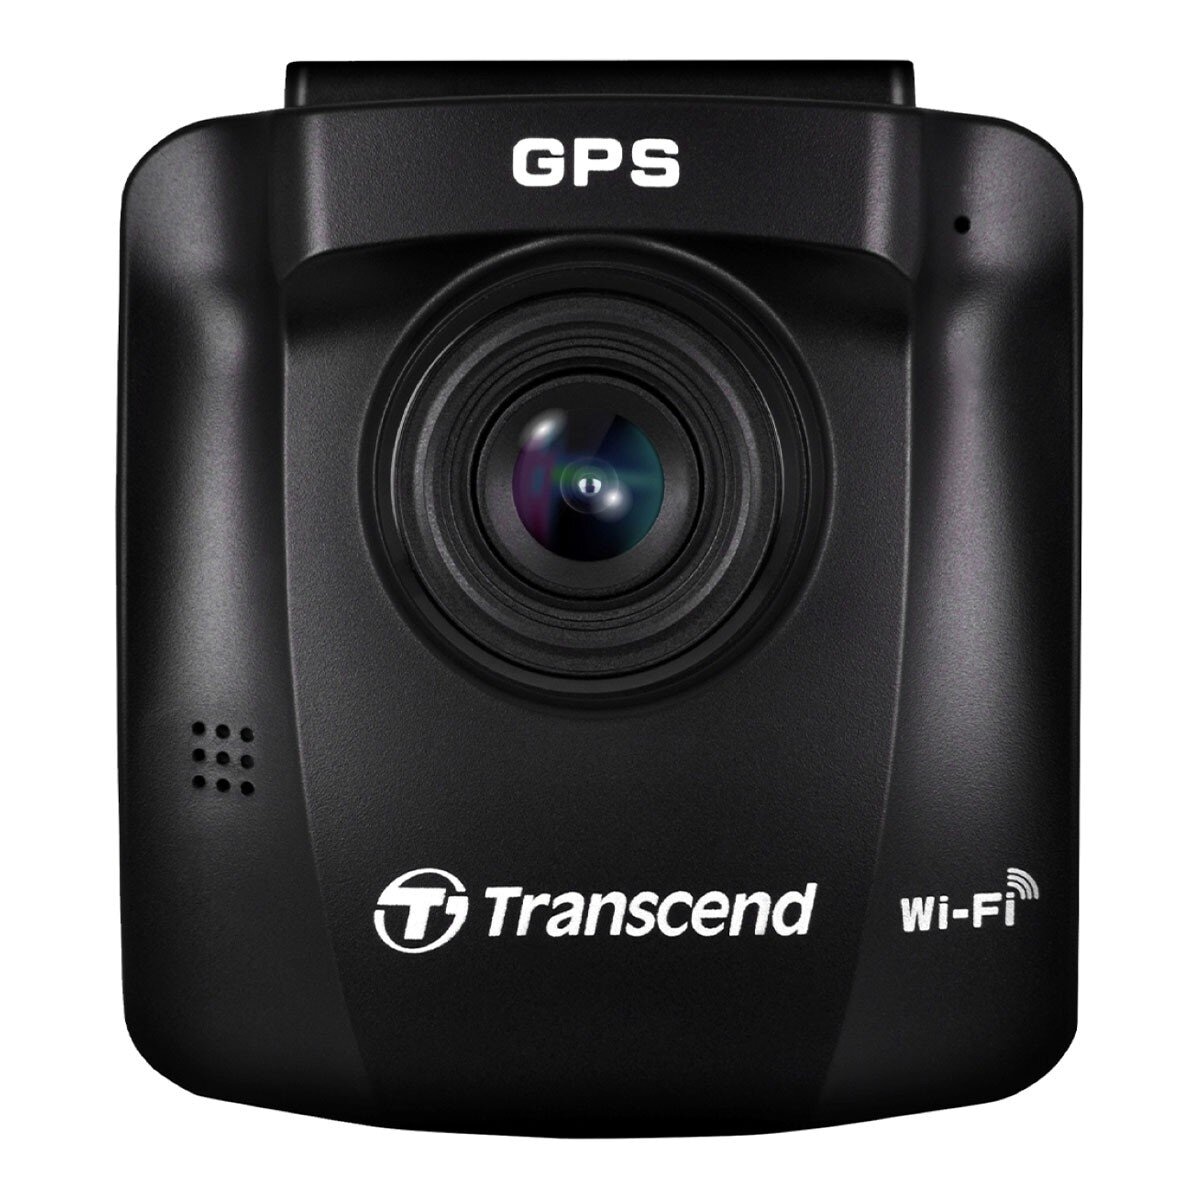 創見 DrivePro 250 行車記錄器內建 Wi-Fi GPS 附 64G 記憶卡